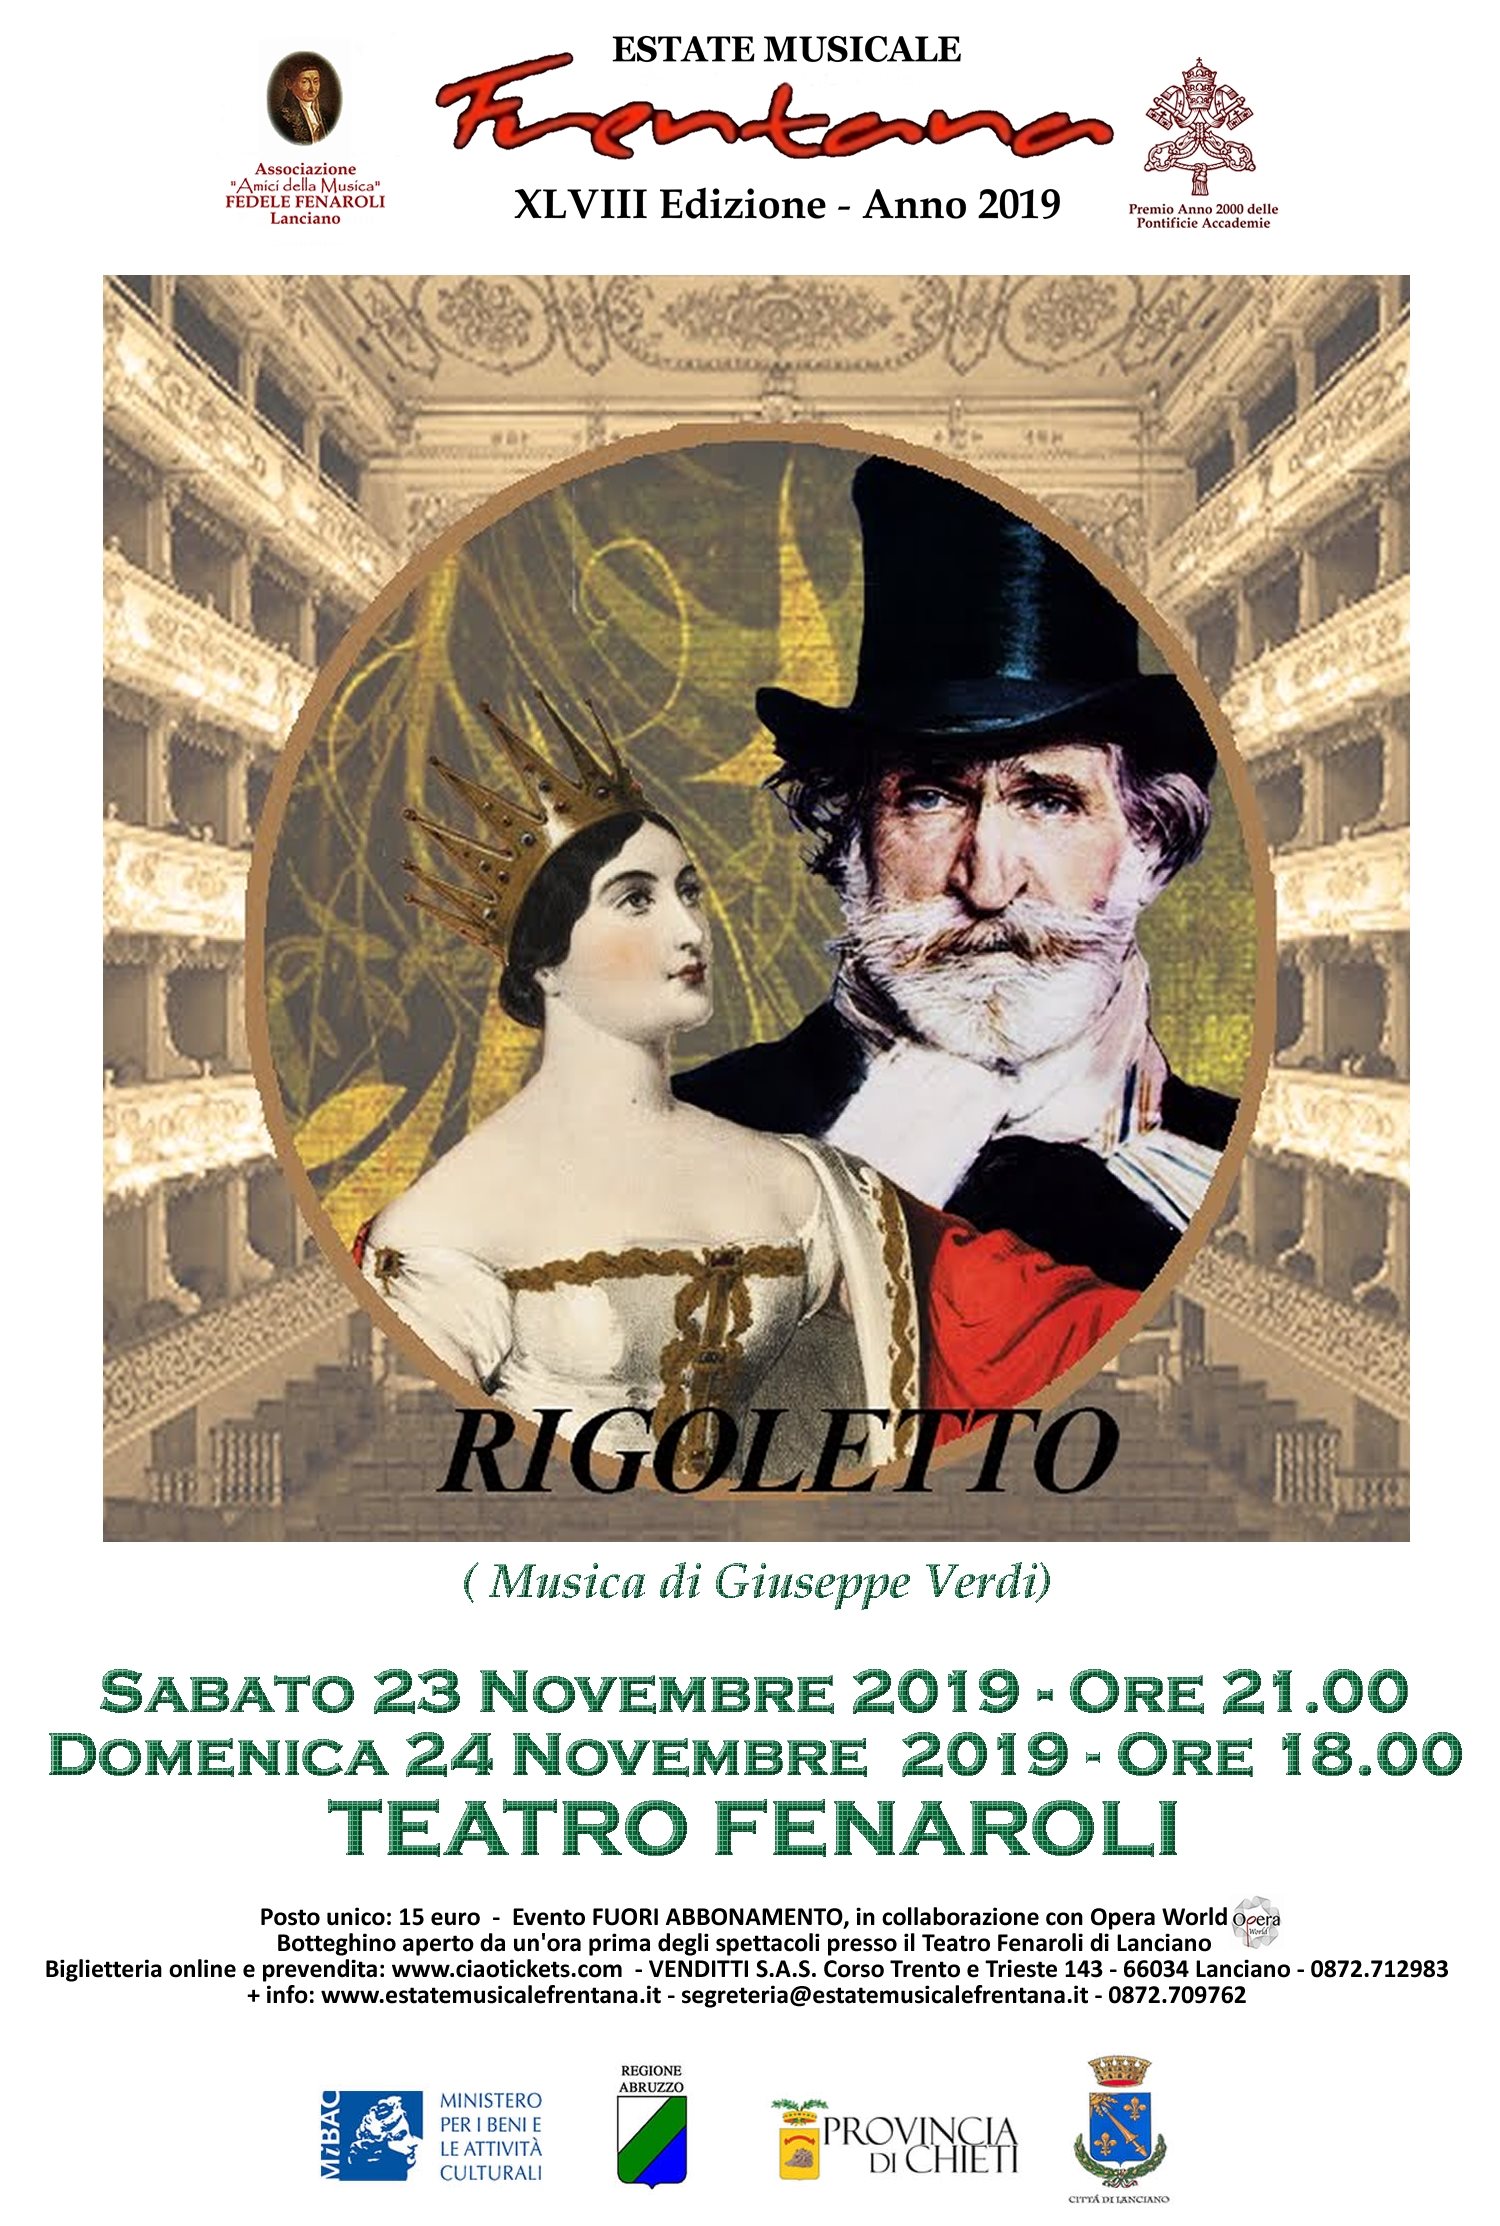 "Rigoletto" (musica di G. Verdi, libretto di F. M. Piave)